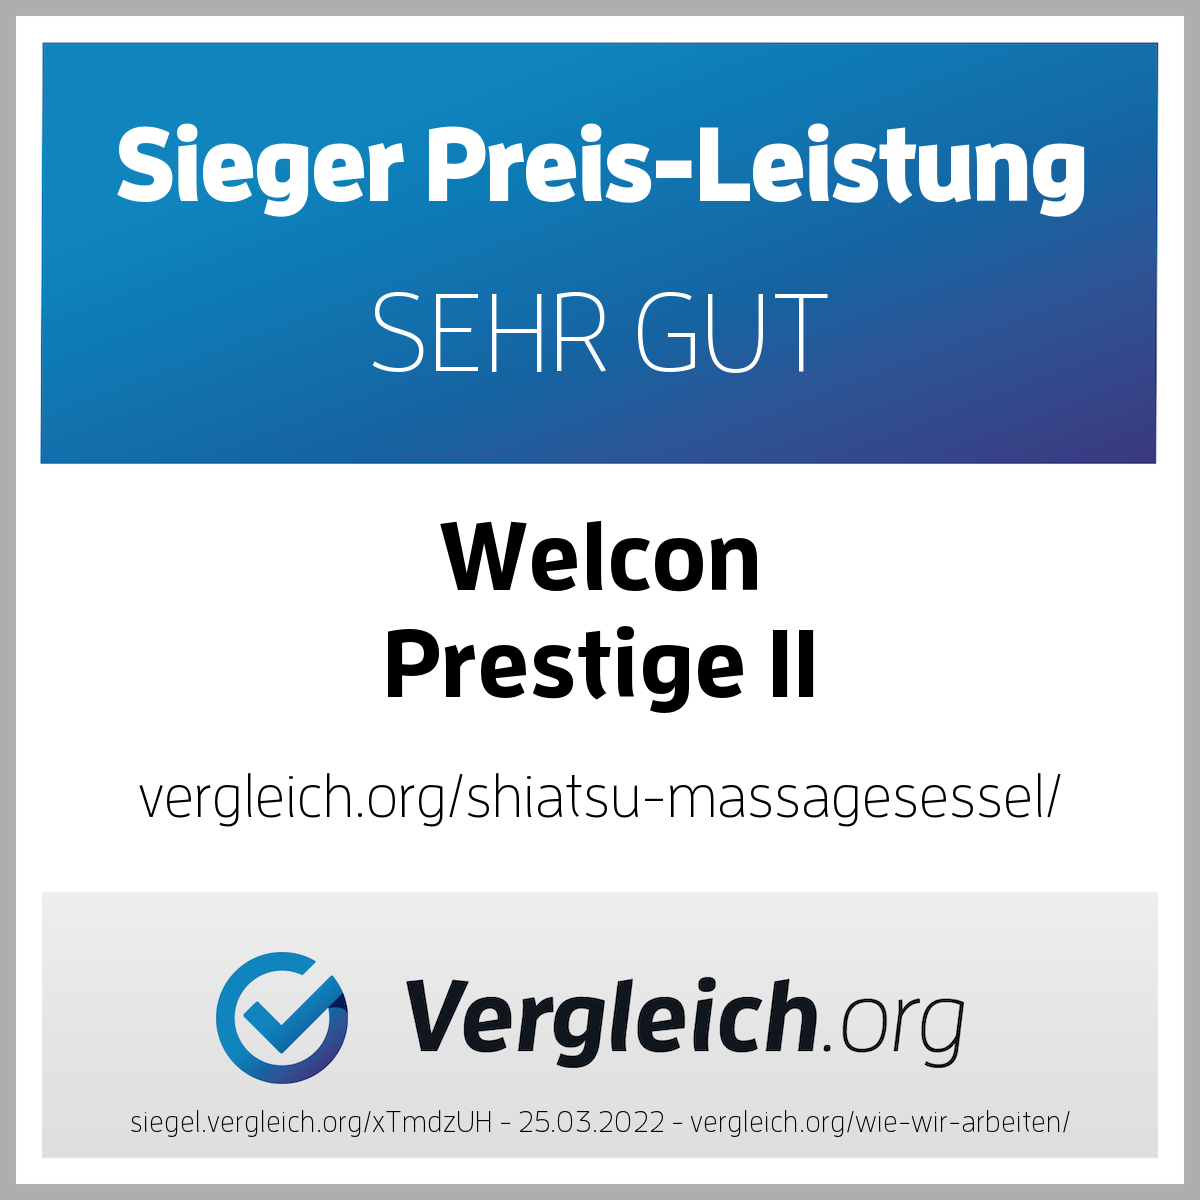 Massagesessel WELCON Prestige II in rot / weinrot - Sale